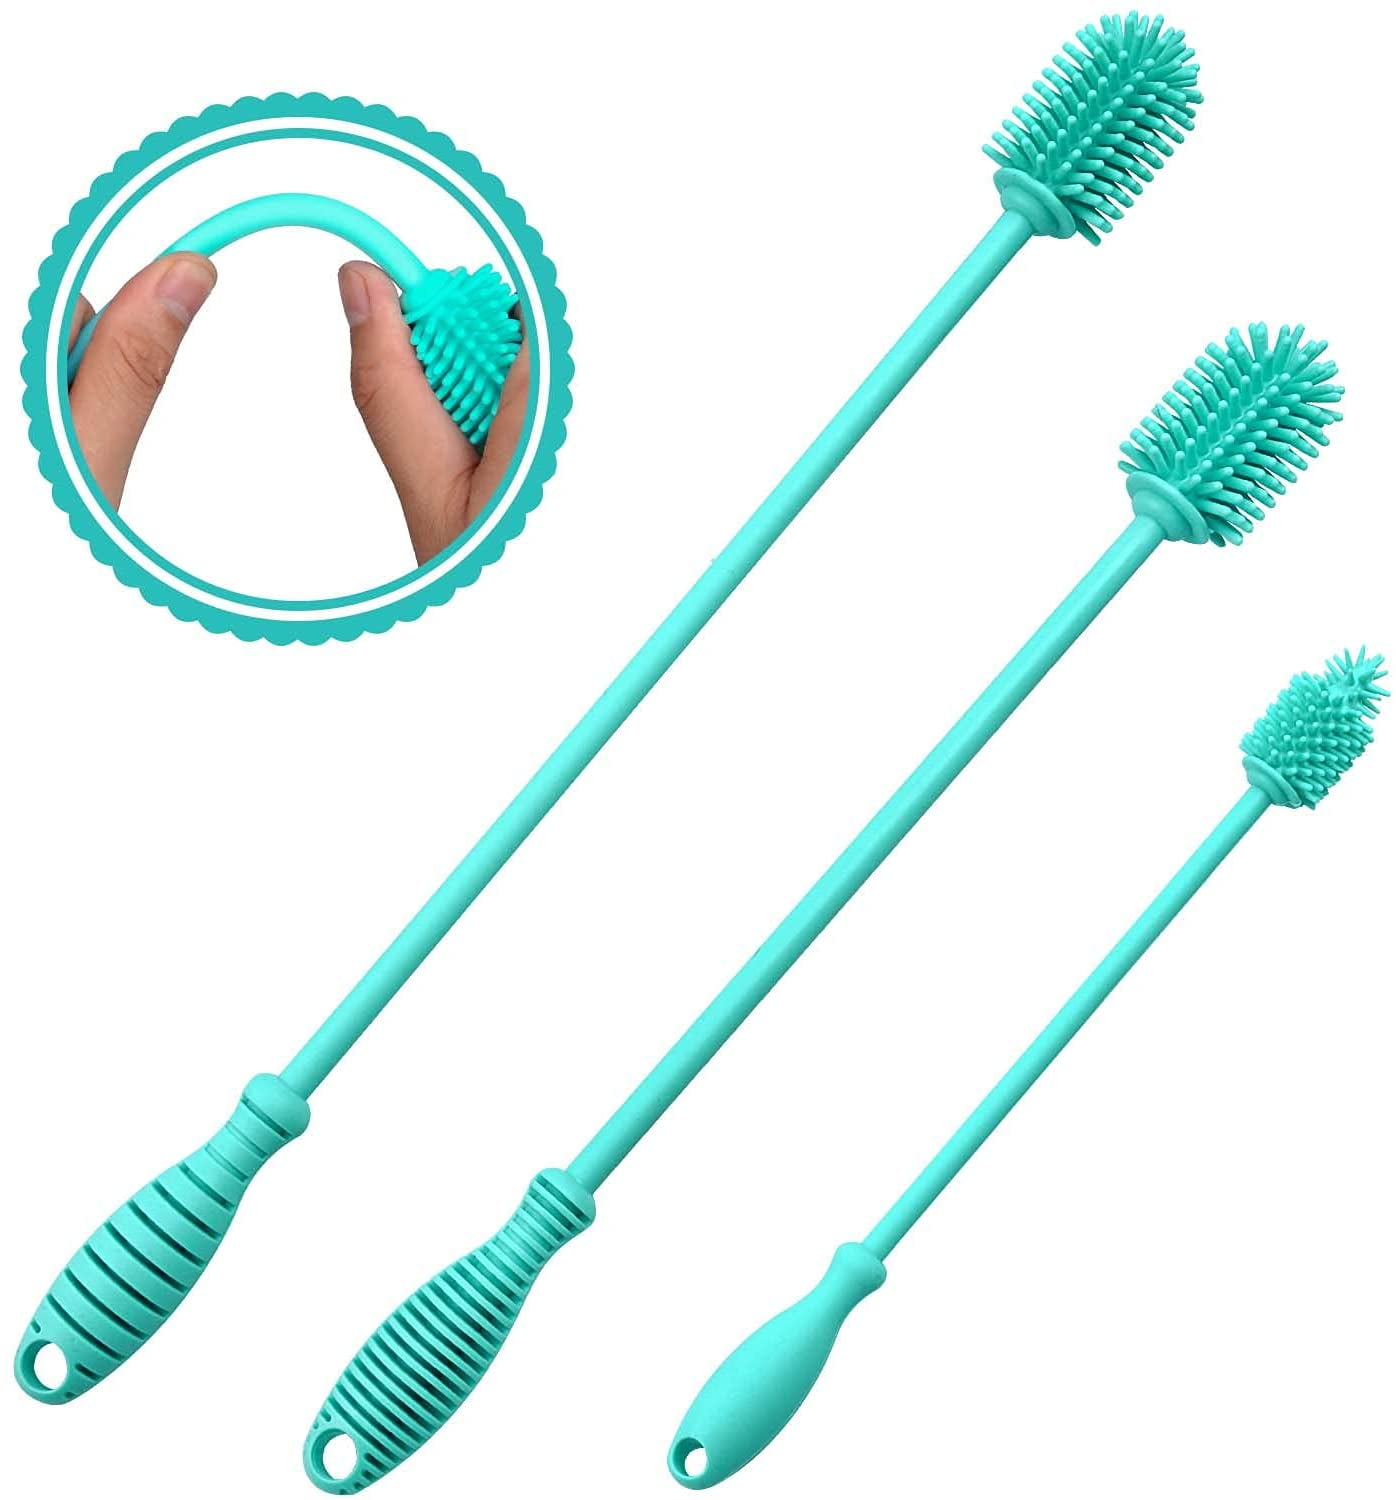  Bottle Brush, Bendable Long Handle Cleaner Brushes for